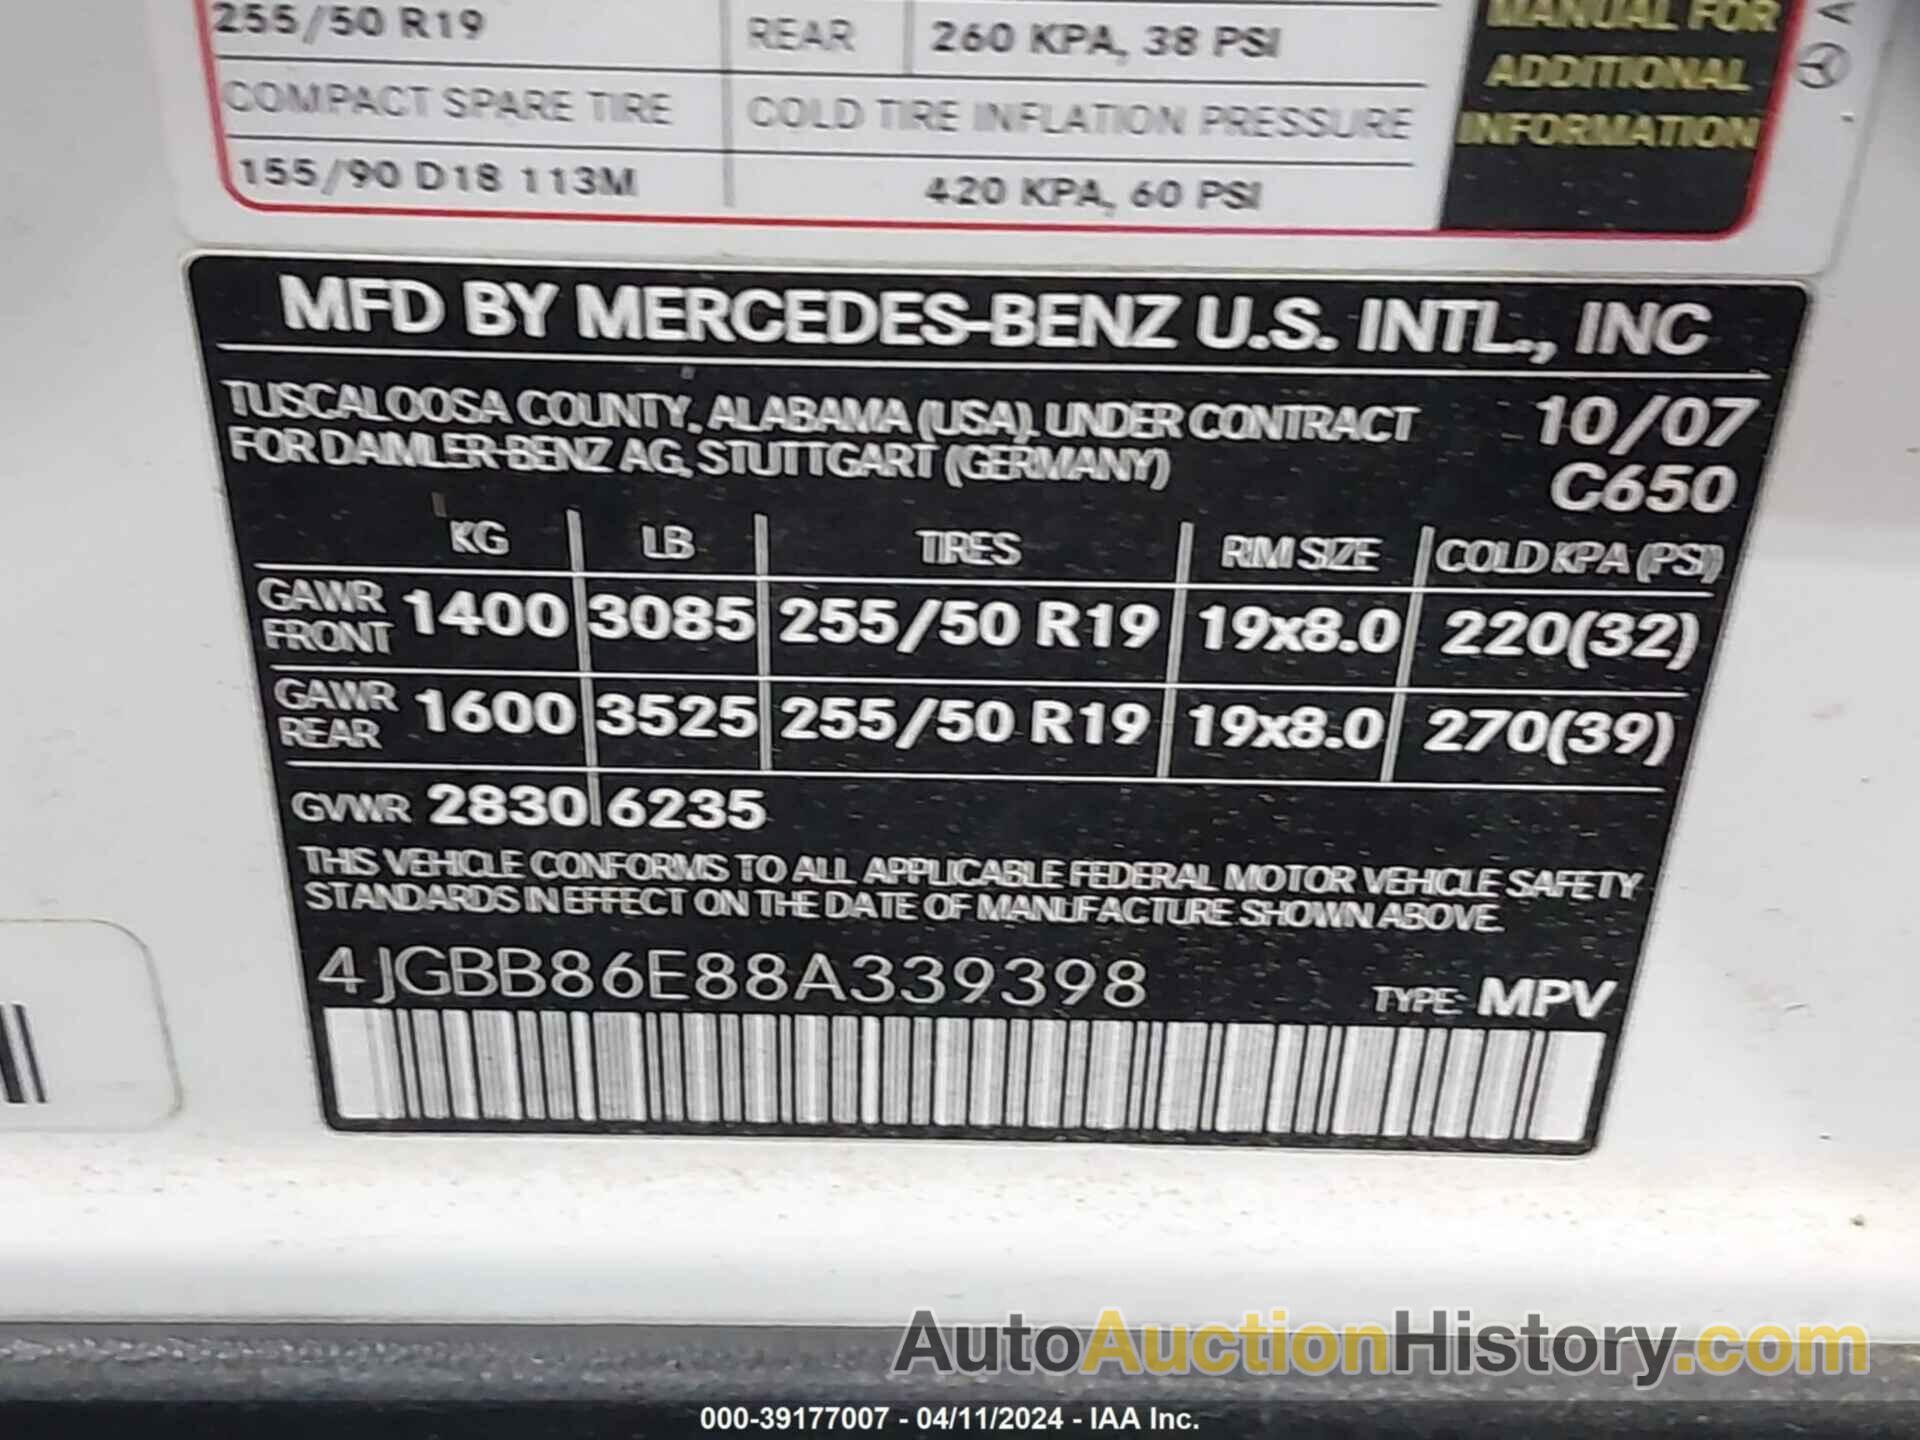 MERCEDES-BENZ ML 350 4MATIC, 4JGBB86E88A339398